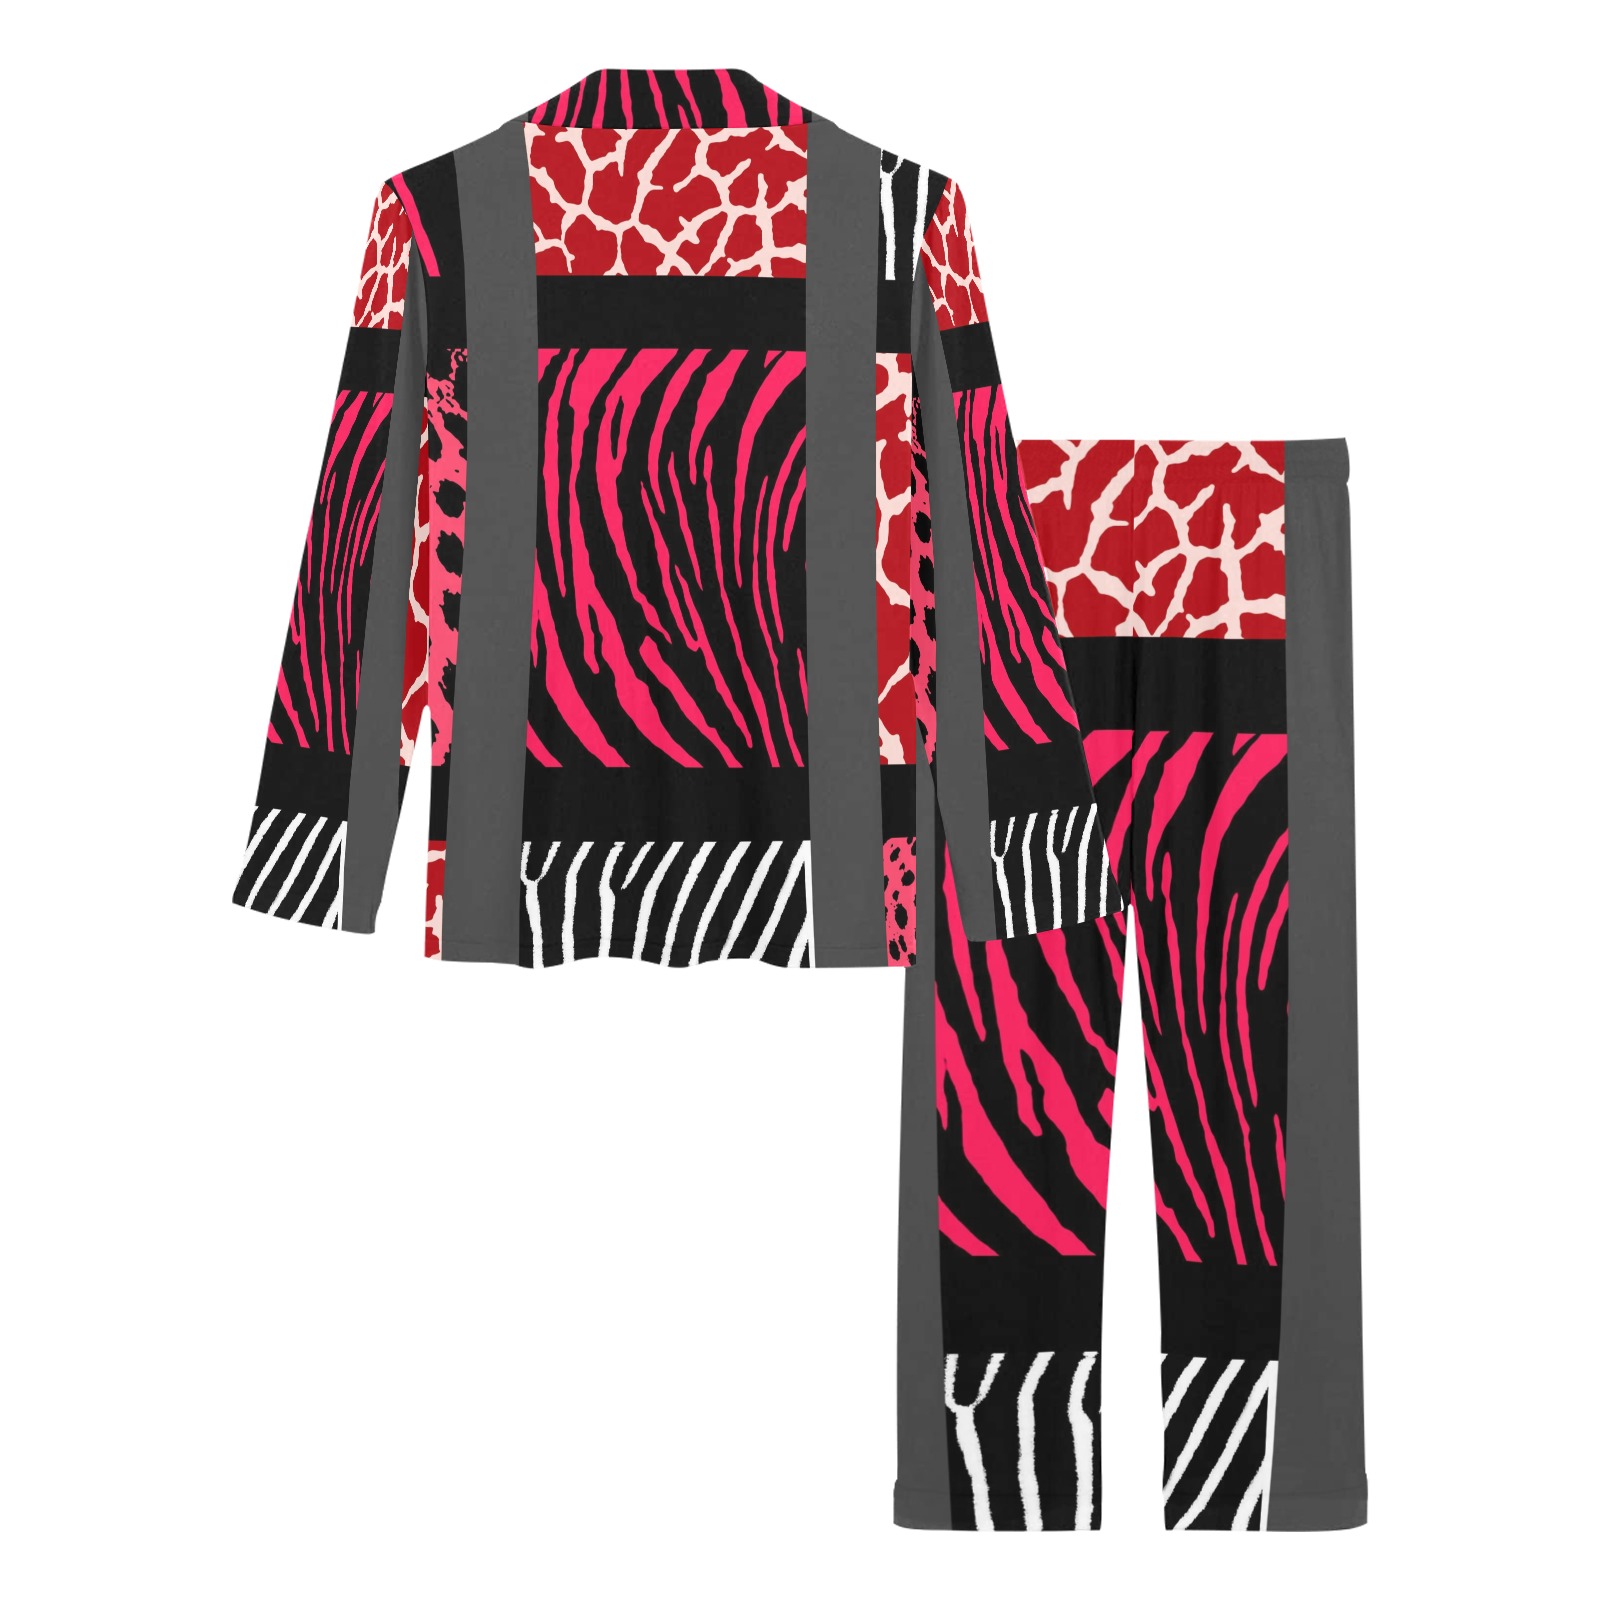 Red Mixed Animal Print Women's Long Pajama Set